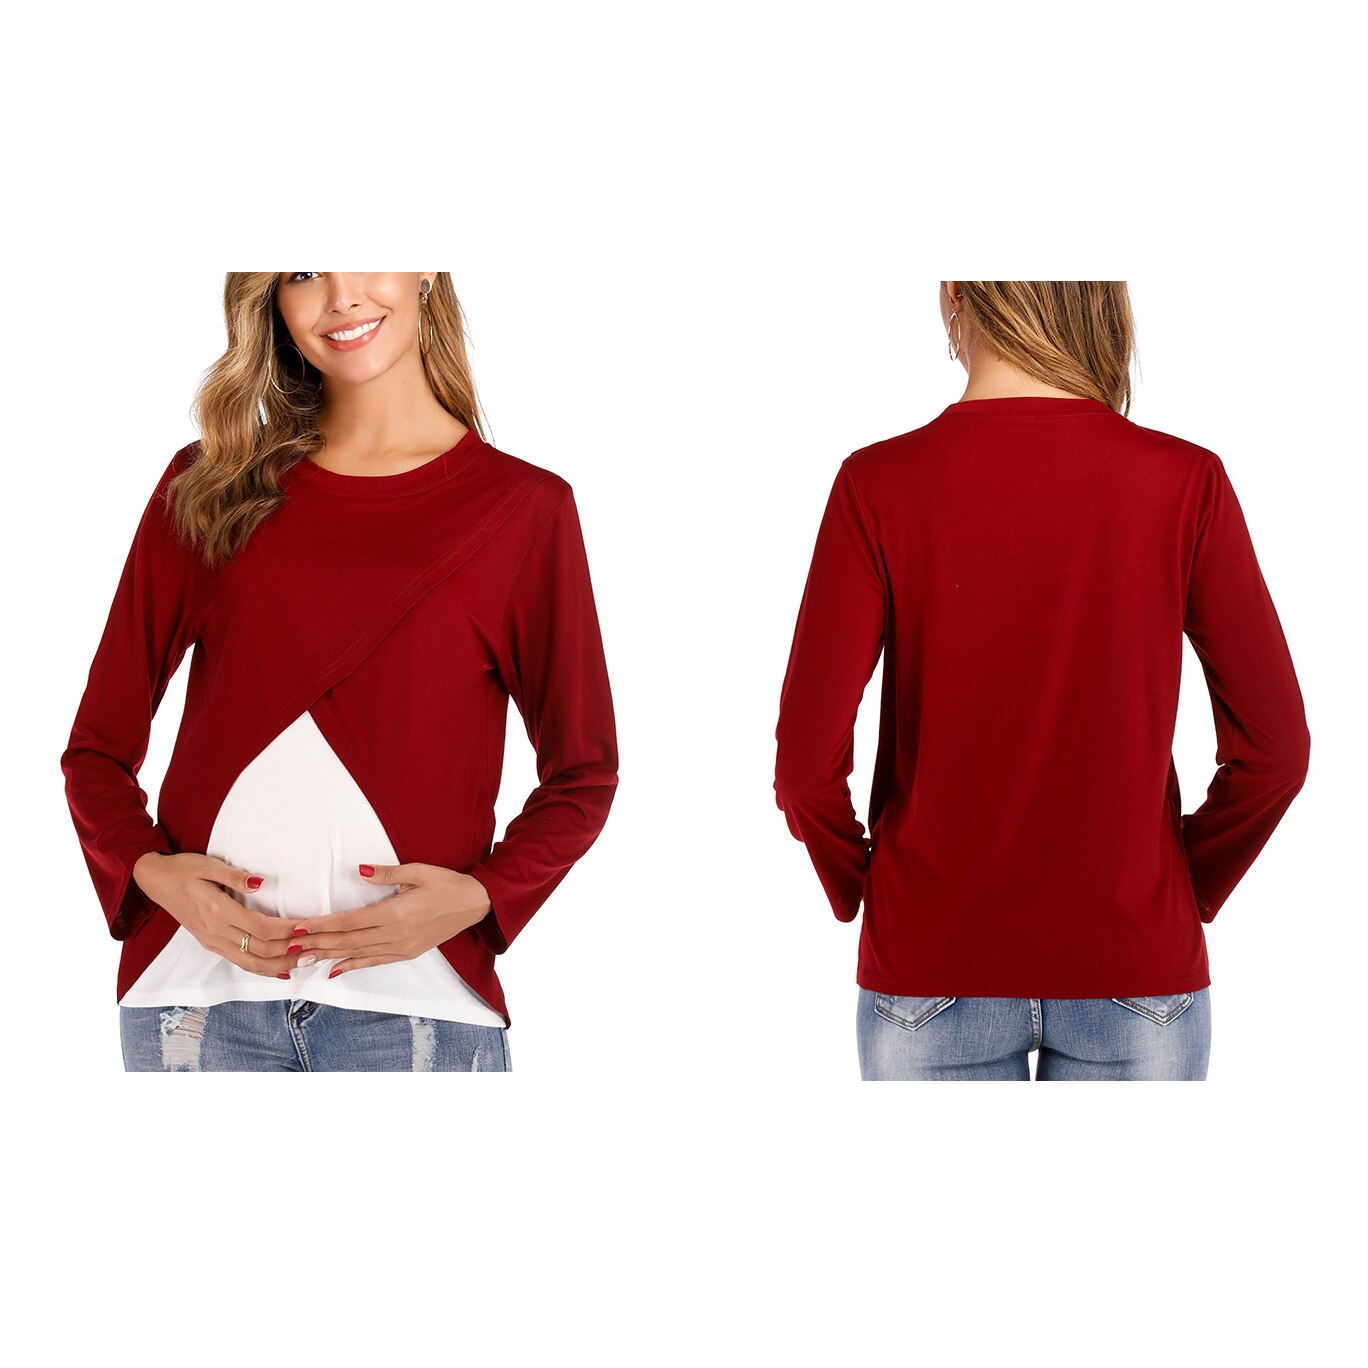 Kvinder gravide barsel amning toppe dobbeltlag graviditet skjorte tøj ammende tøj